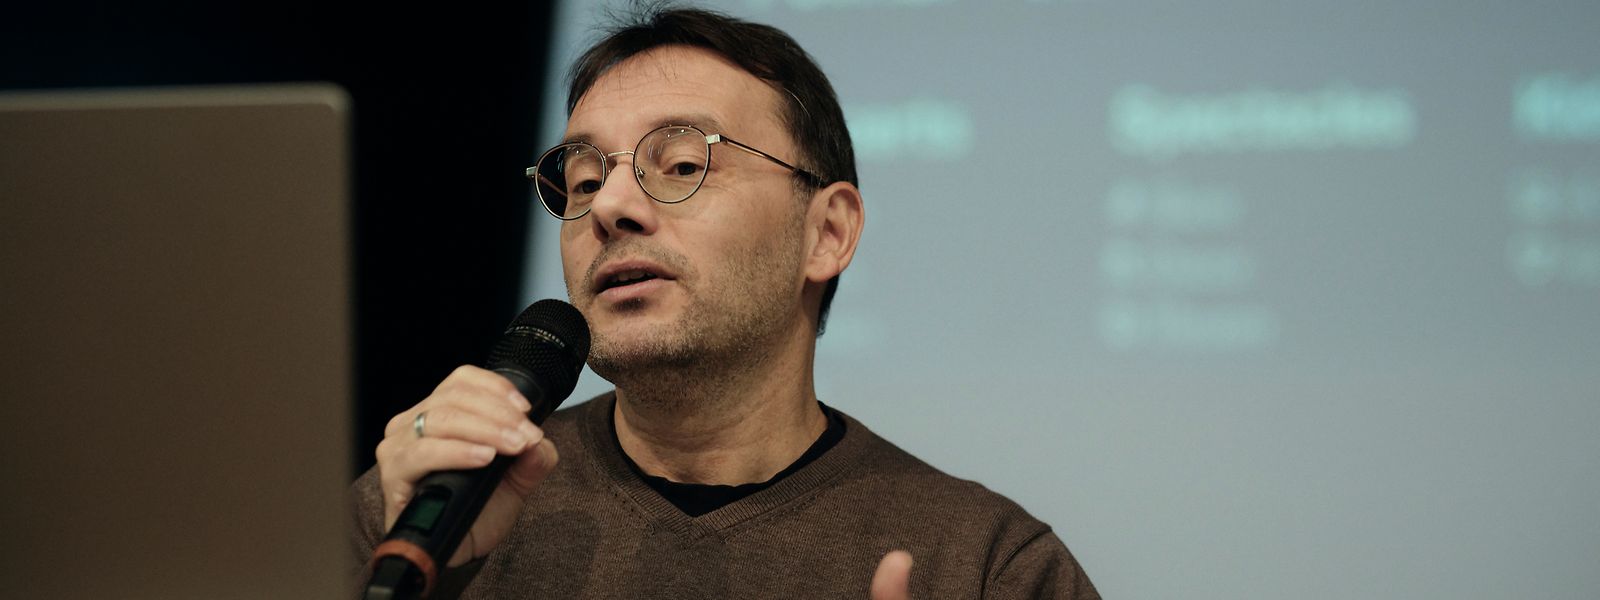 Manuel Ribeiro steht verantwortlich als künstlerischer Direktor den Geschicken im Artikuss voran.